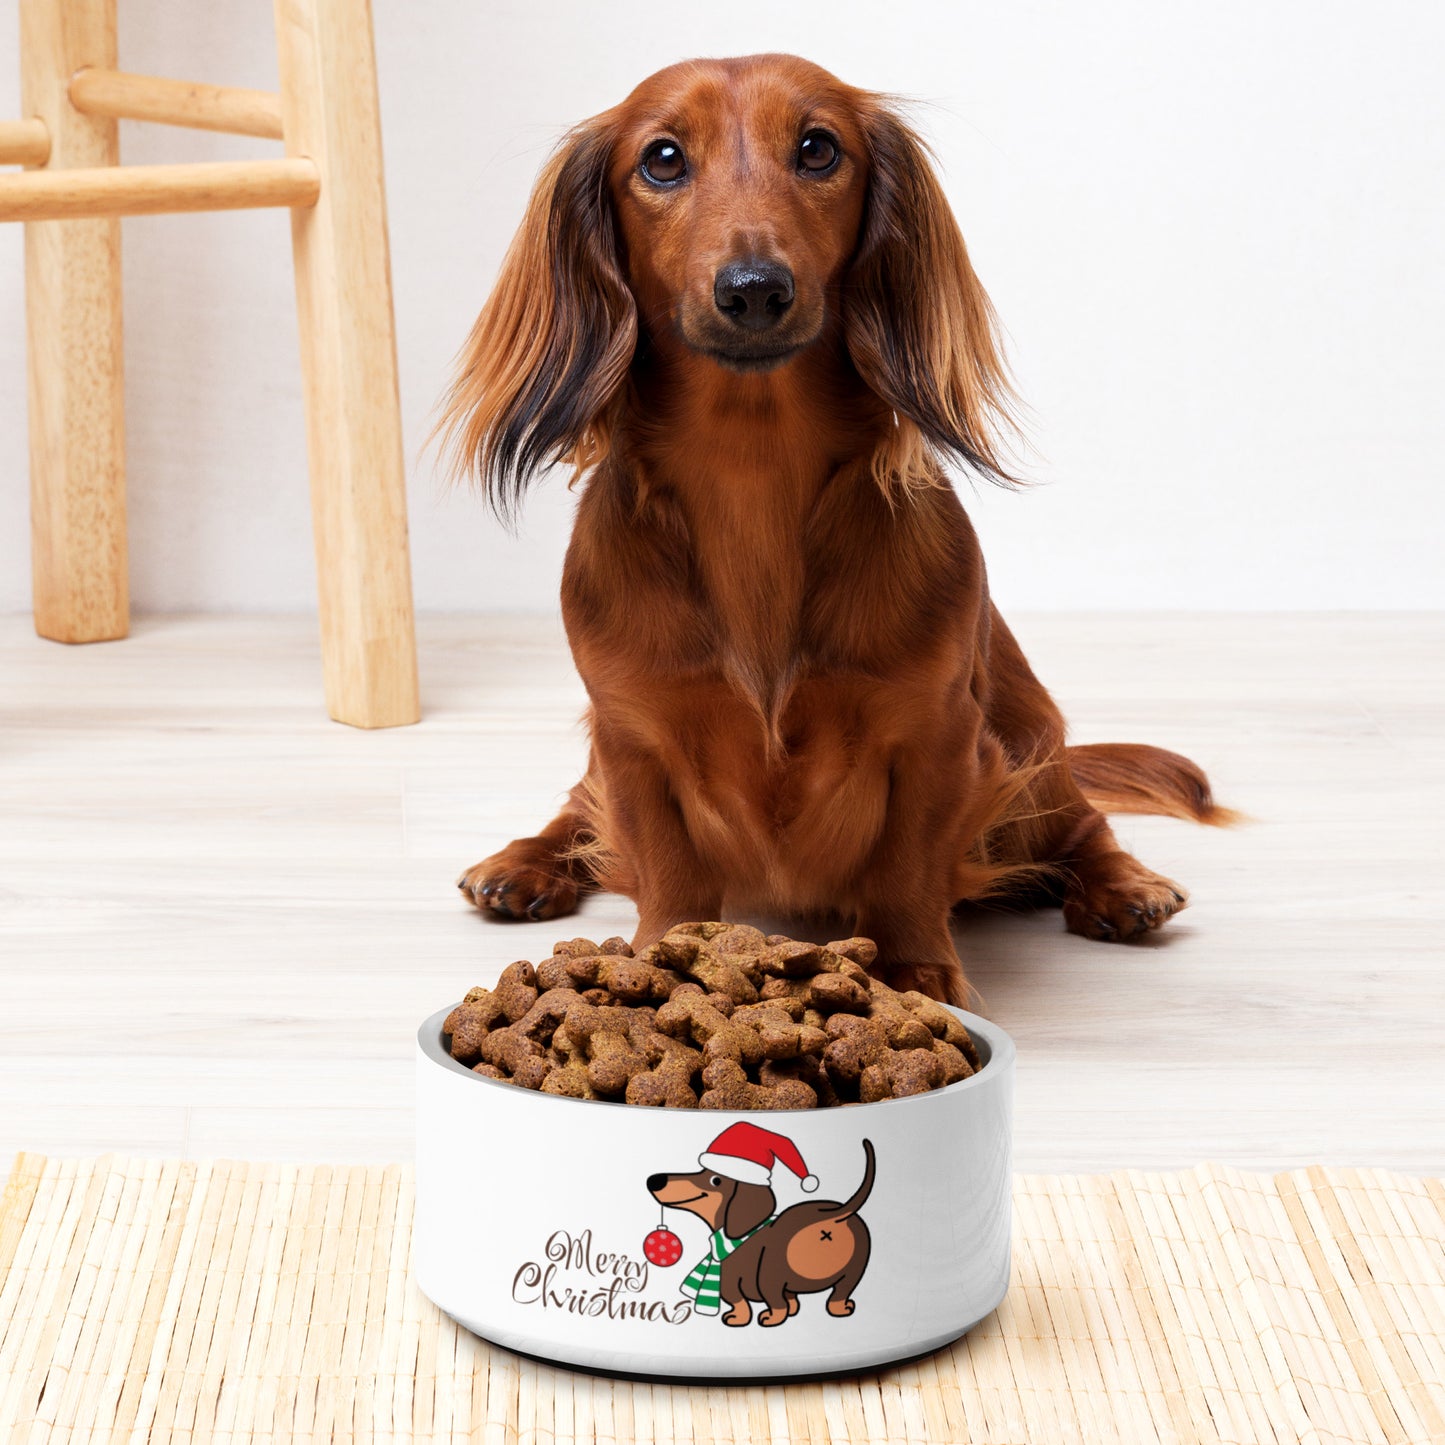 Dachshund Christmas Pet bowl